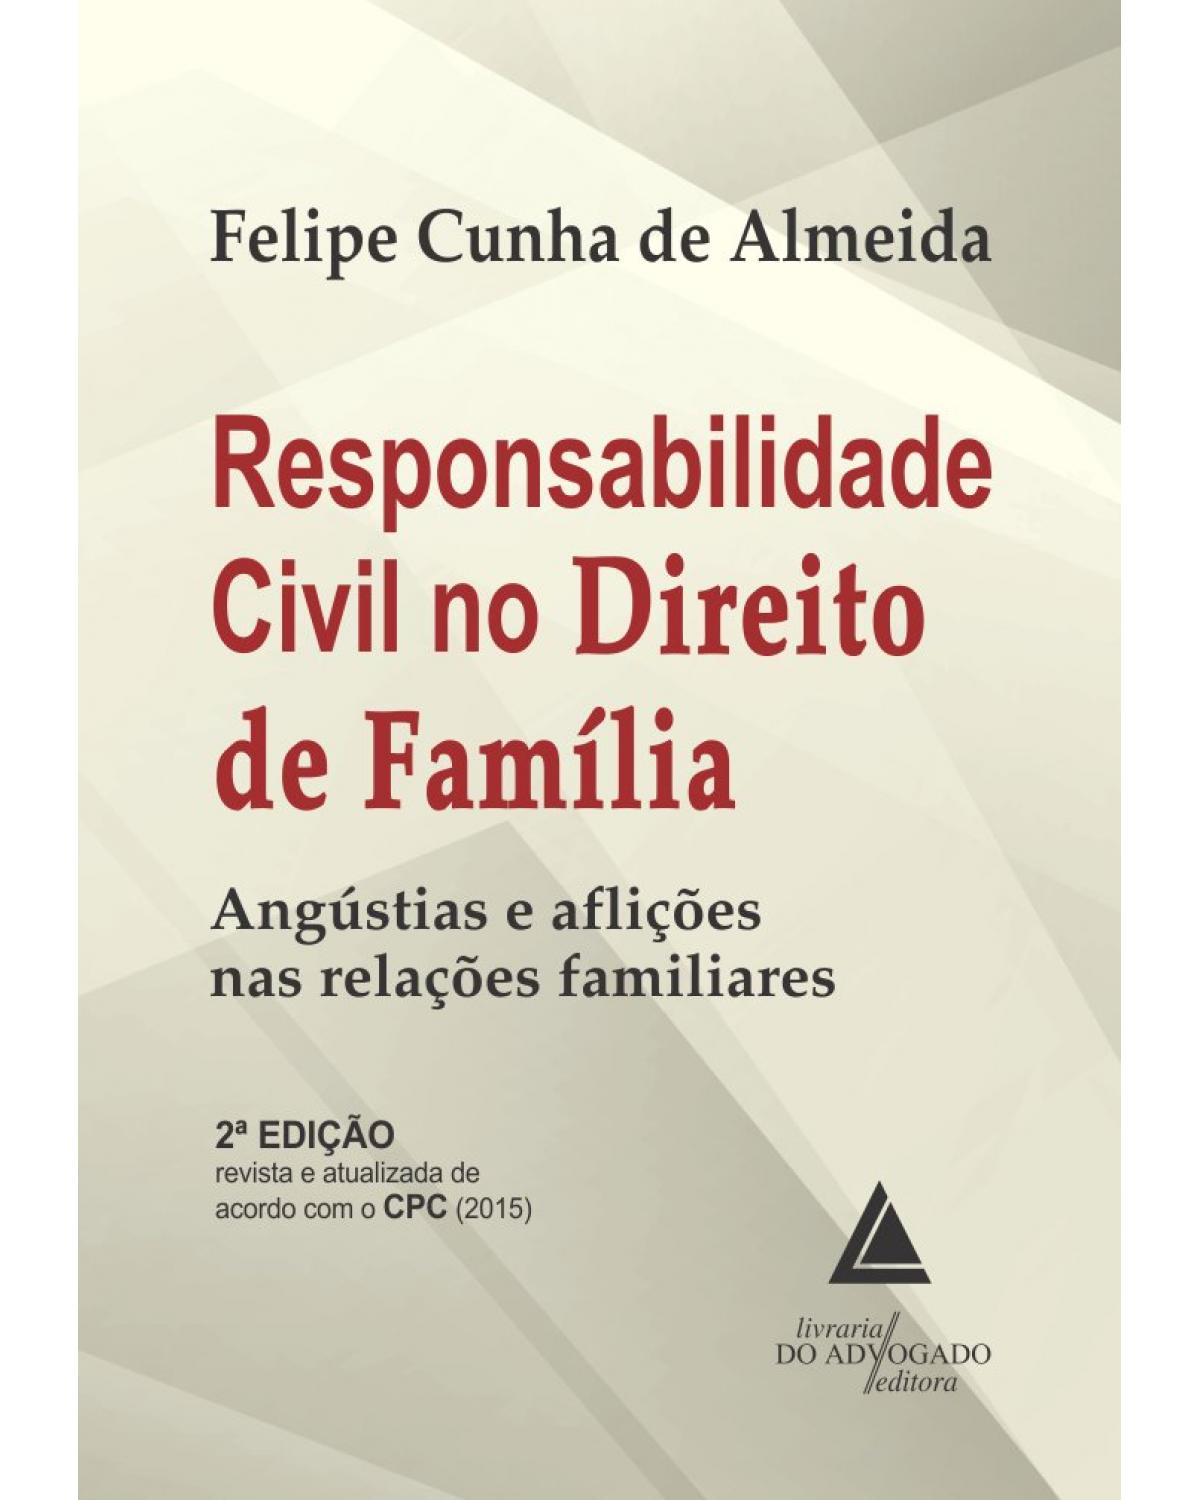 Responsabilidade civil no direito de família: angústias e aflições nas relações familiares - 2ª Edição | 2020